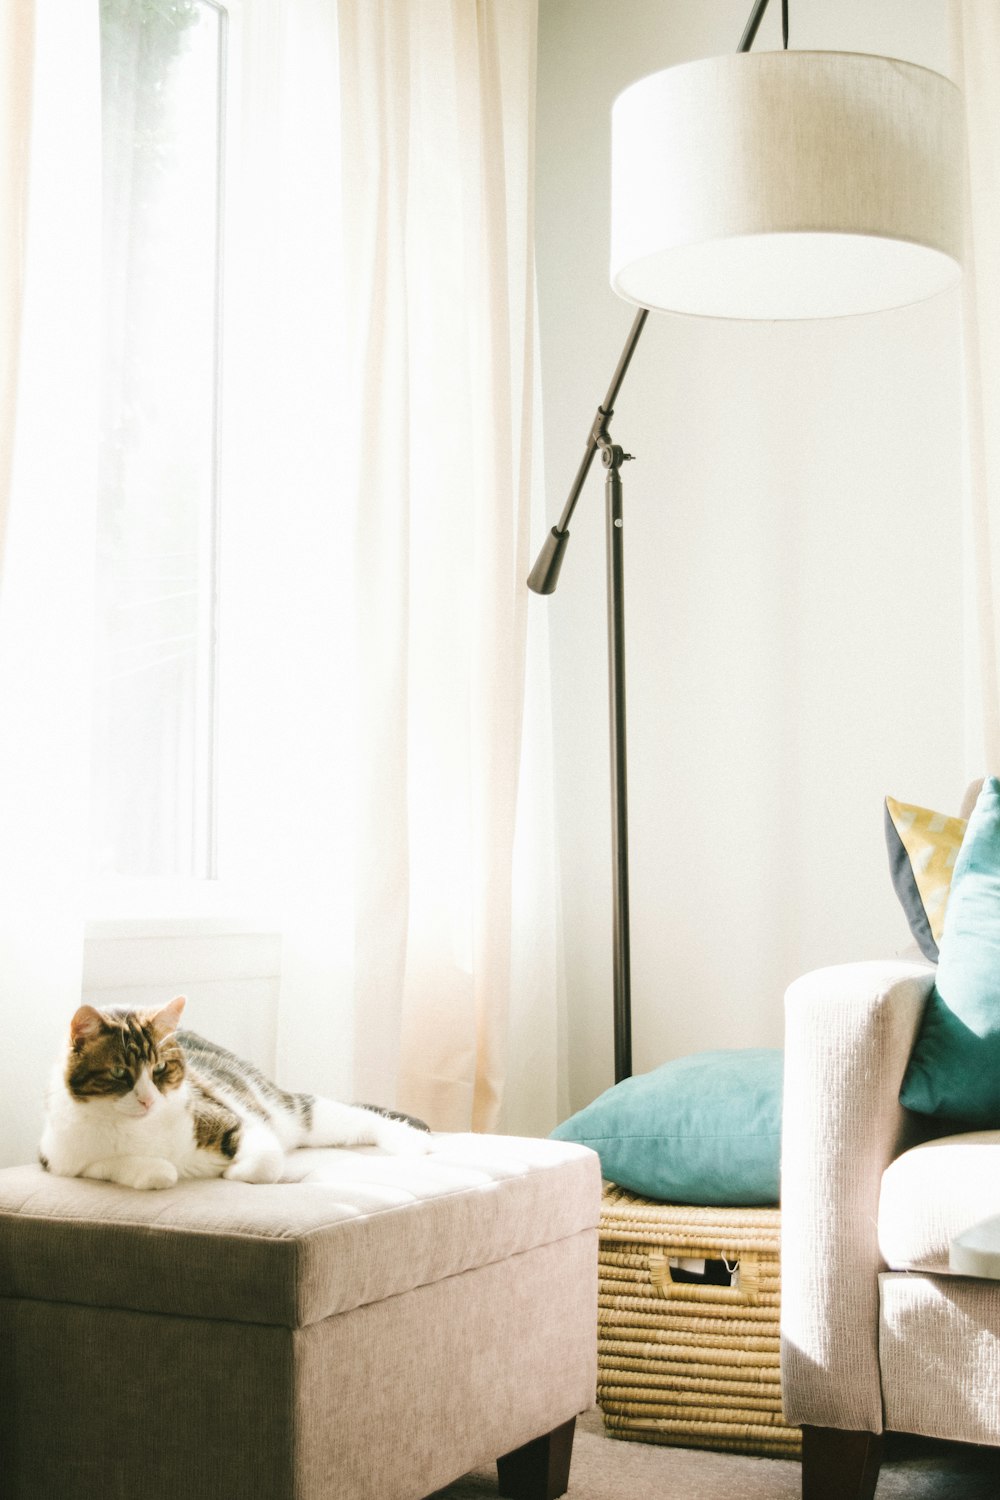 gato gris y blanco acostado en una otomana marrón cerca del sofá, el cesto de ropa y la lámpara de pie dentro de una habitación bien iluminada